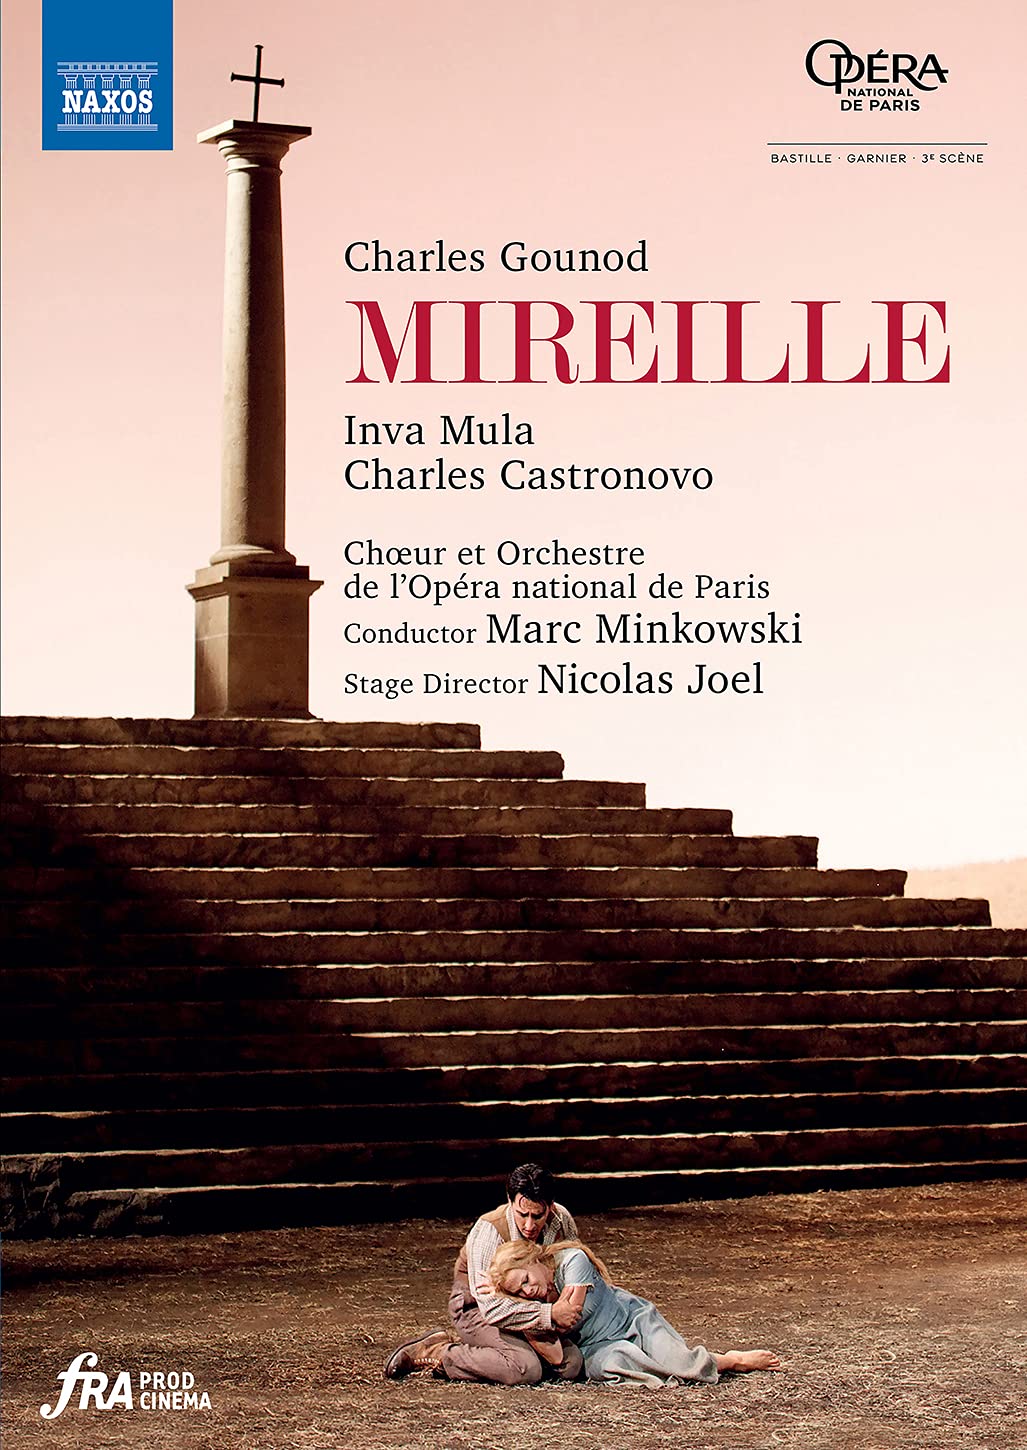 Music Dvd Charles Gounod - Mireille (2 Dvd) NUOVO SIGILLATO, EDIZIONE DEL 10/05/2021 SUBITO DISPONIBILE